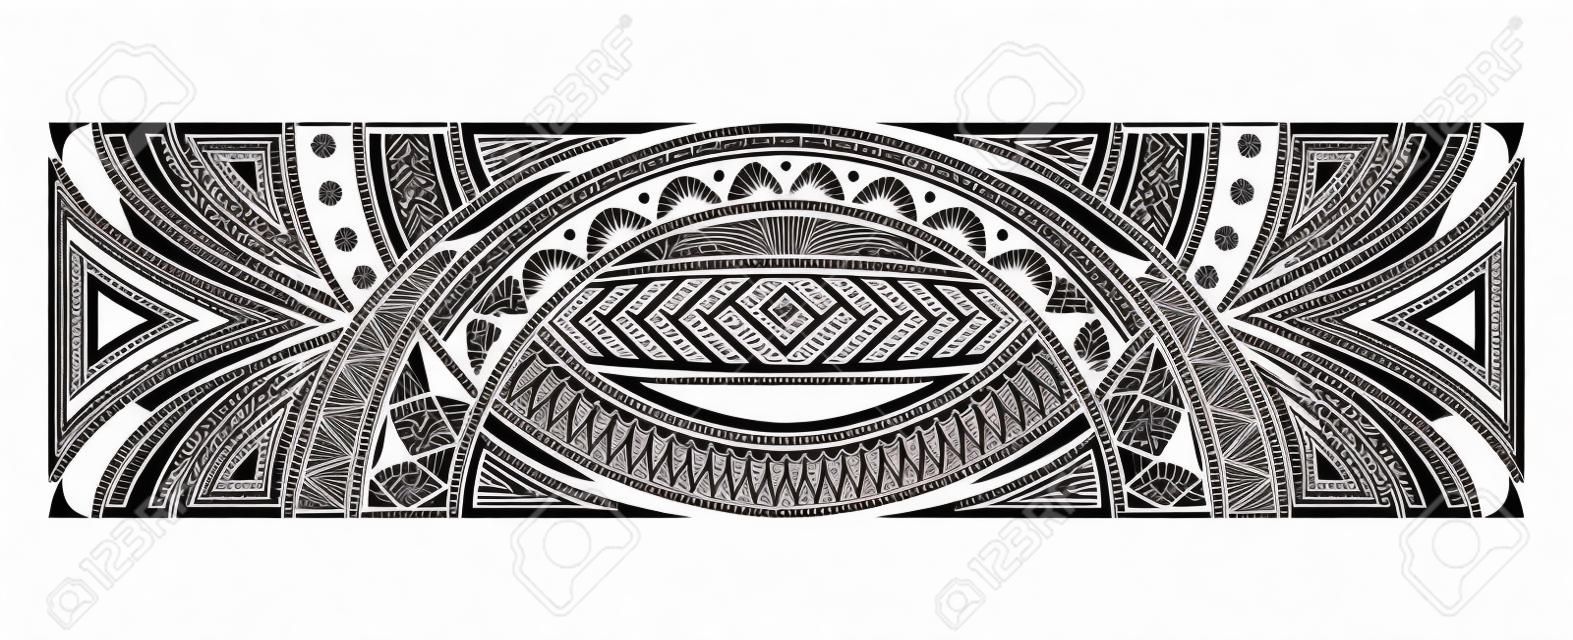 motif de tatouage polynésien maori, bordure d'ornement de samoa, vecteur de modèle tribal éthique.